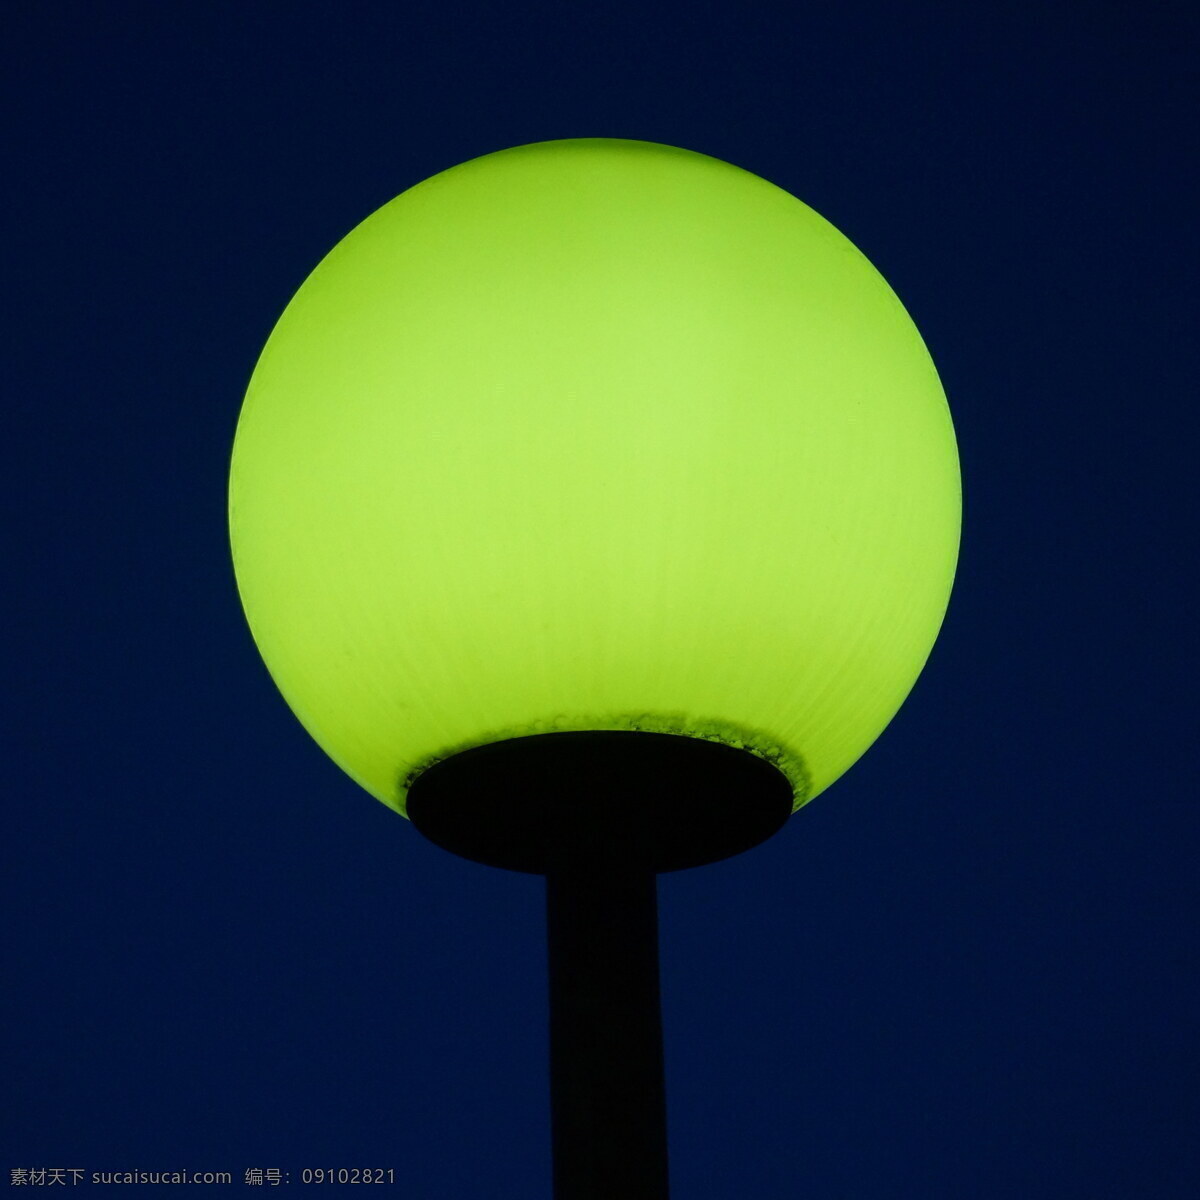 绿色 照明灯 高清 绿色路灯 路灯 街灯 灯具